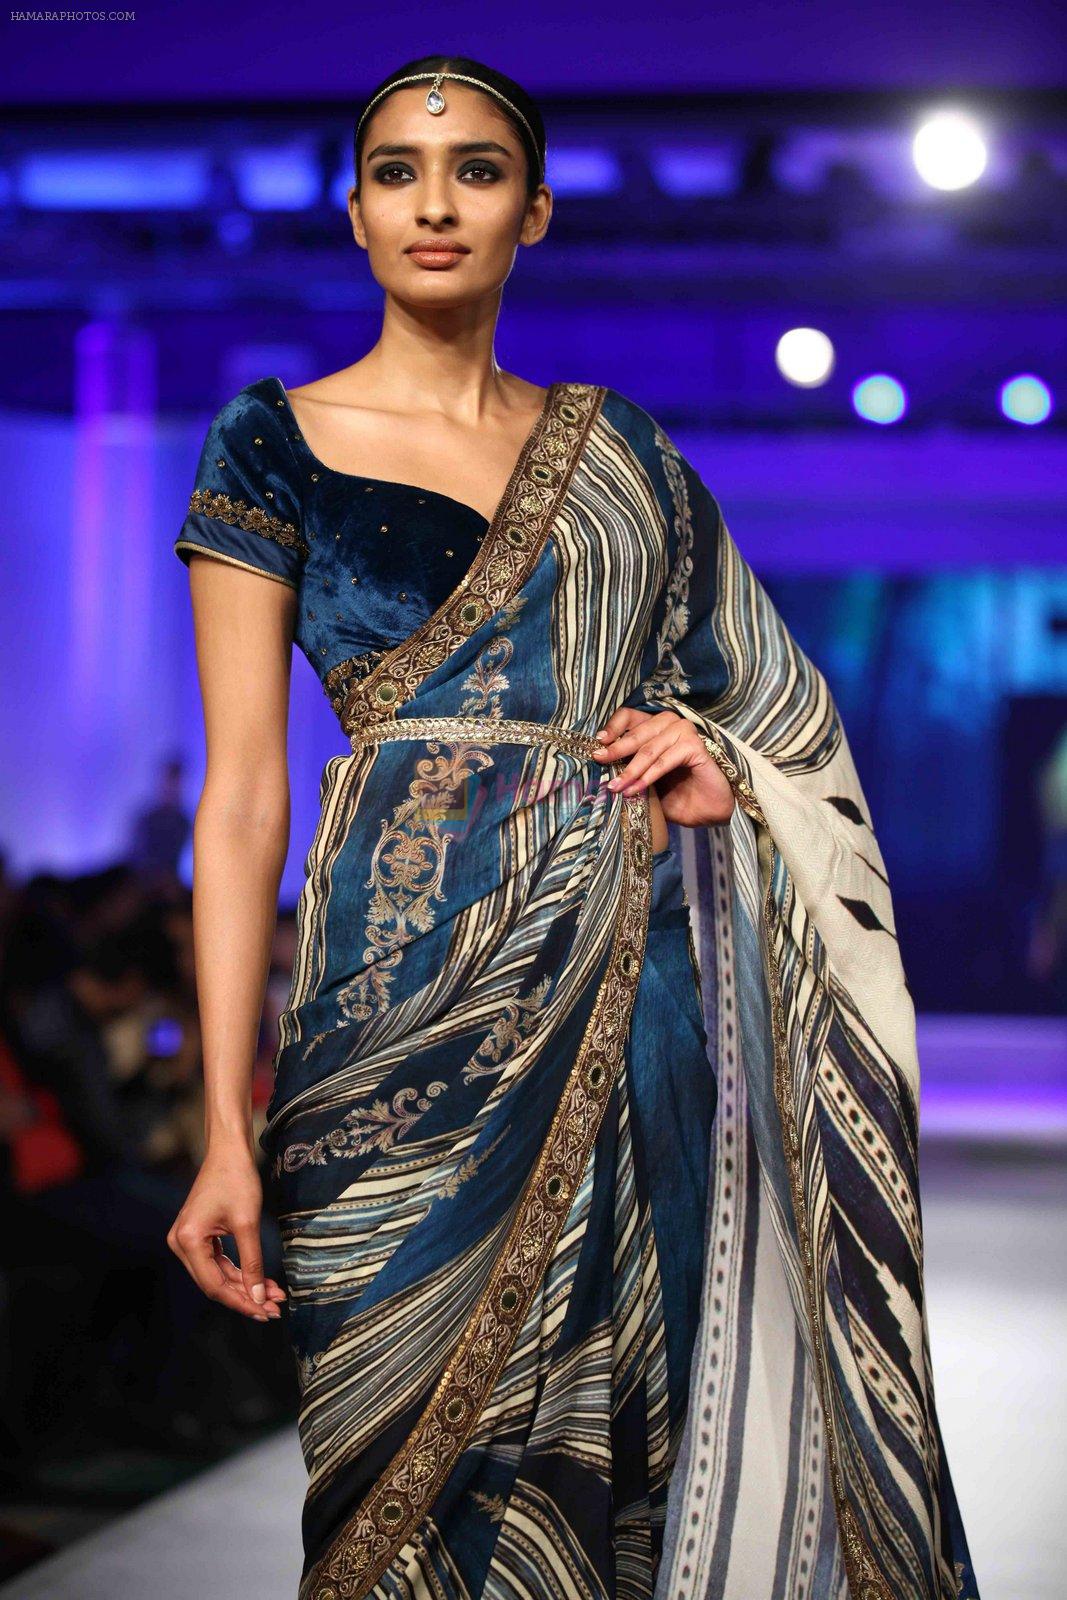 Model walks for JJ Valaya in Kolkata for Blenders show on 8th Nov 2015